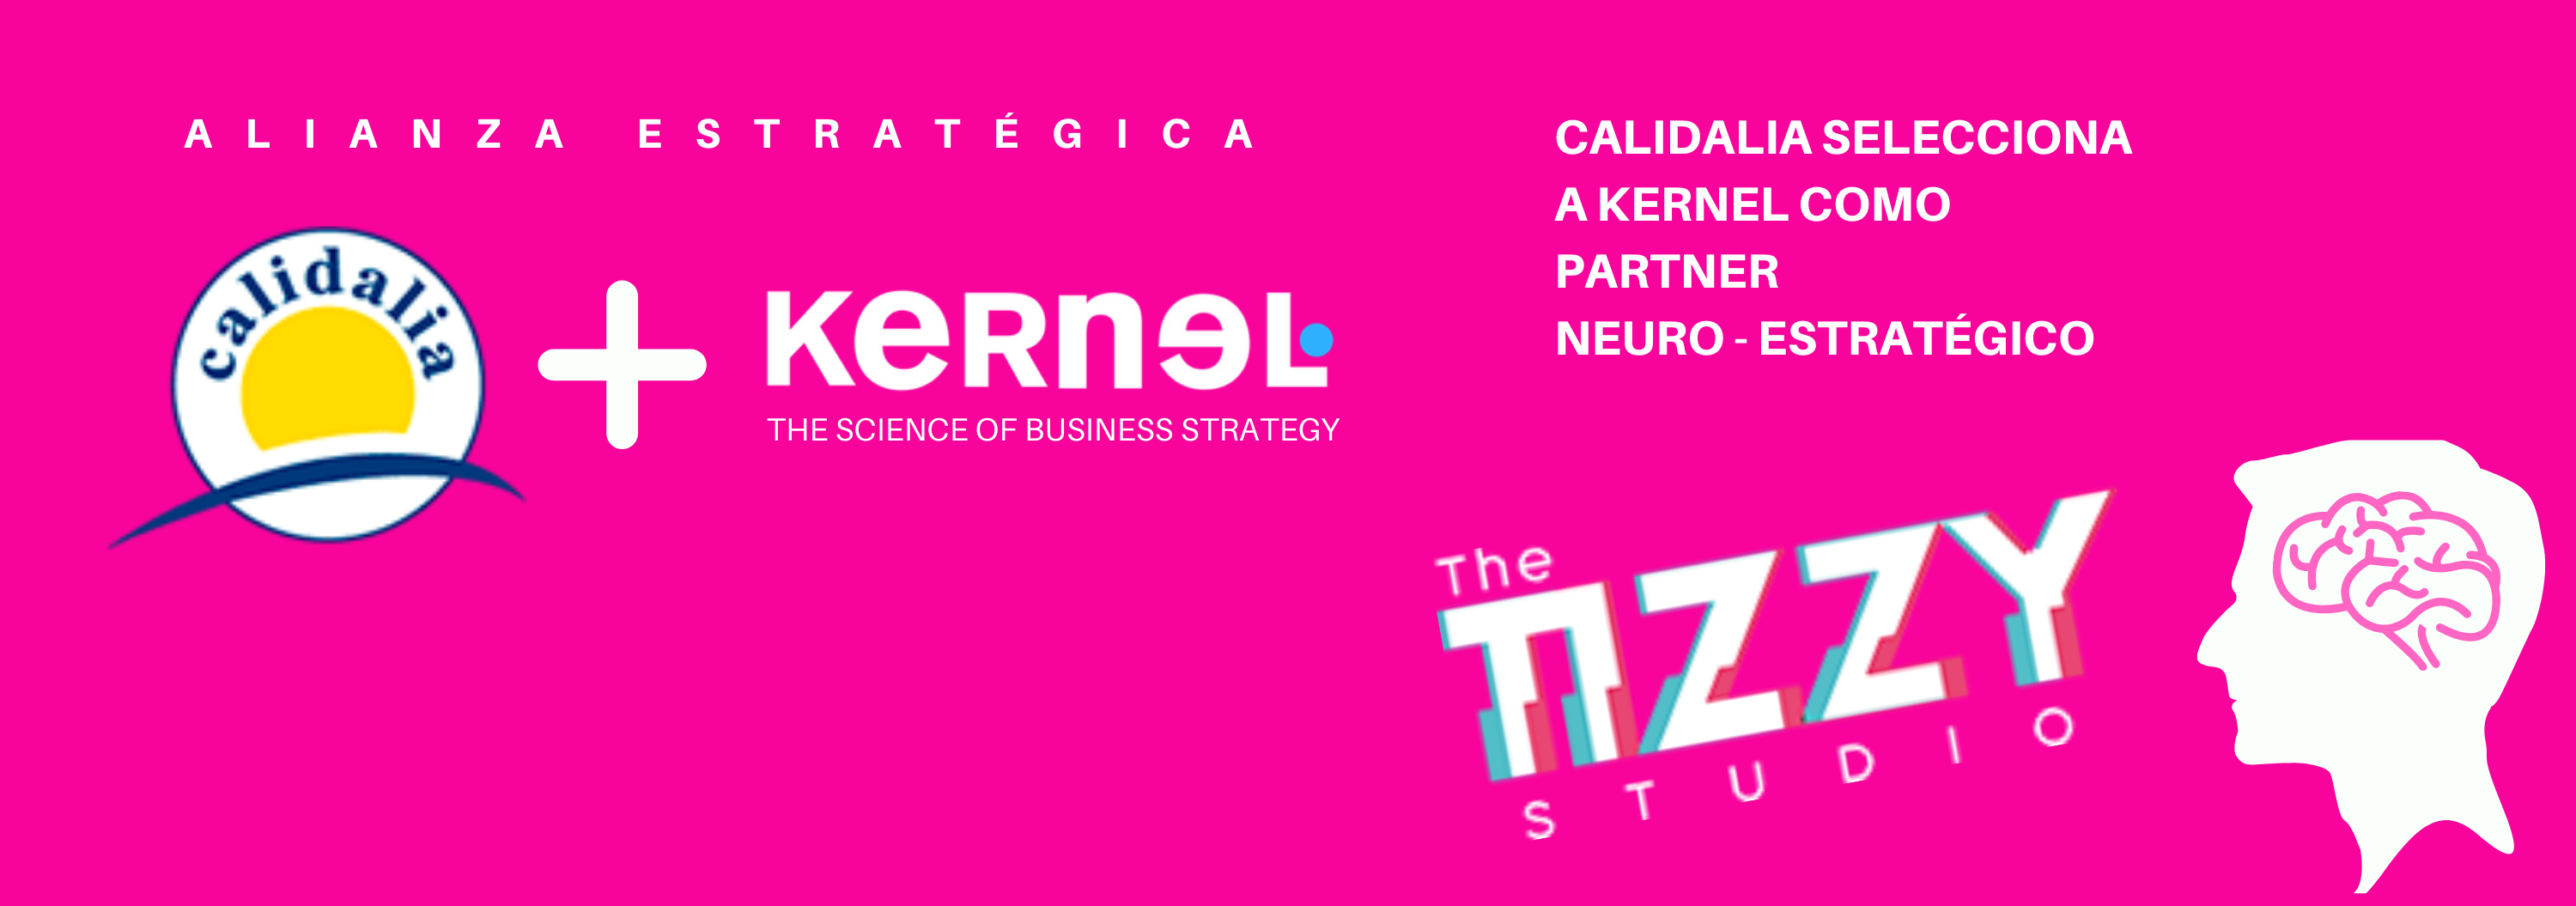 Calidalia selecciona a Kernel como socio estratégico